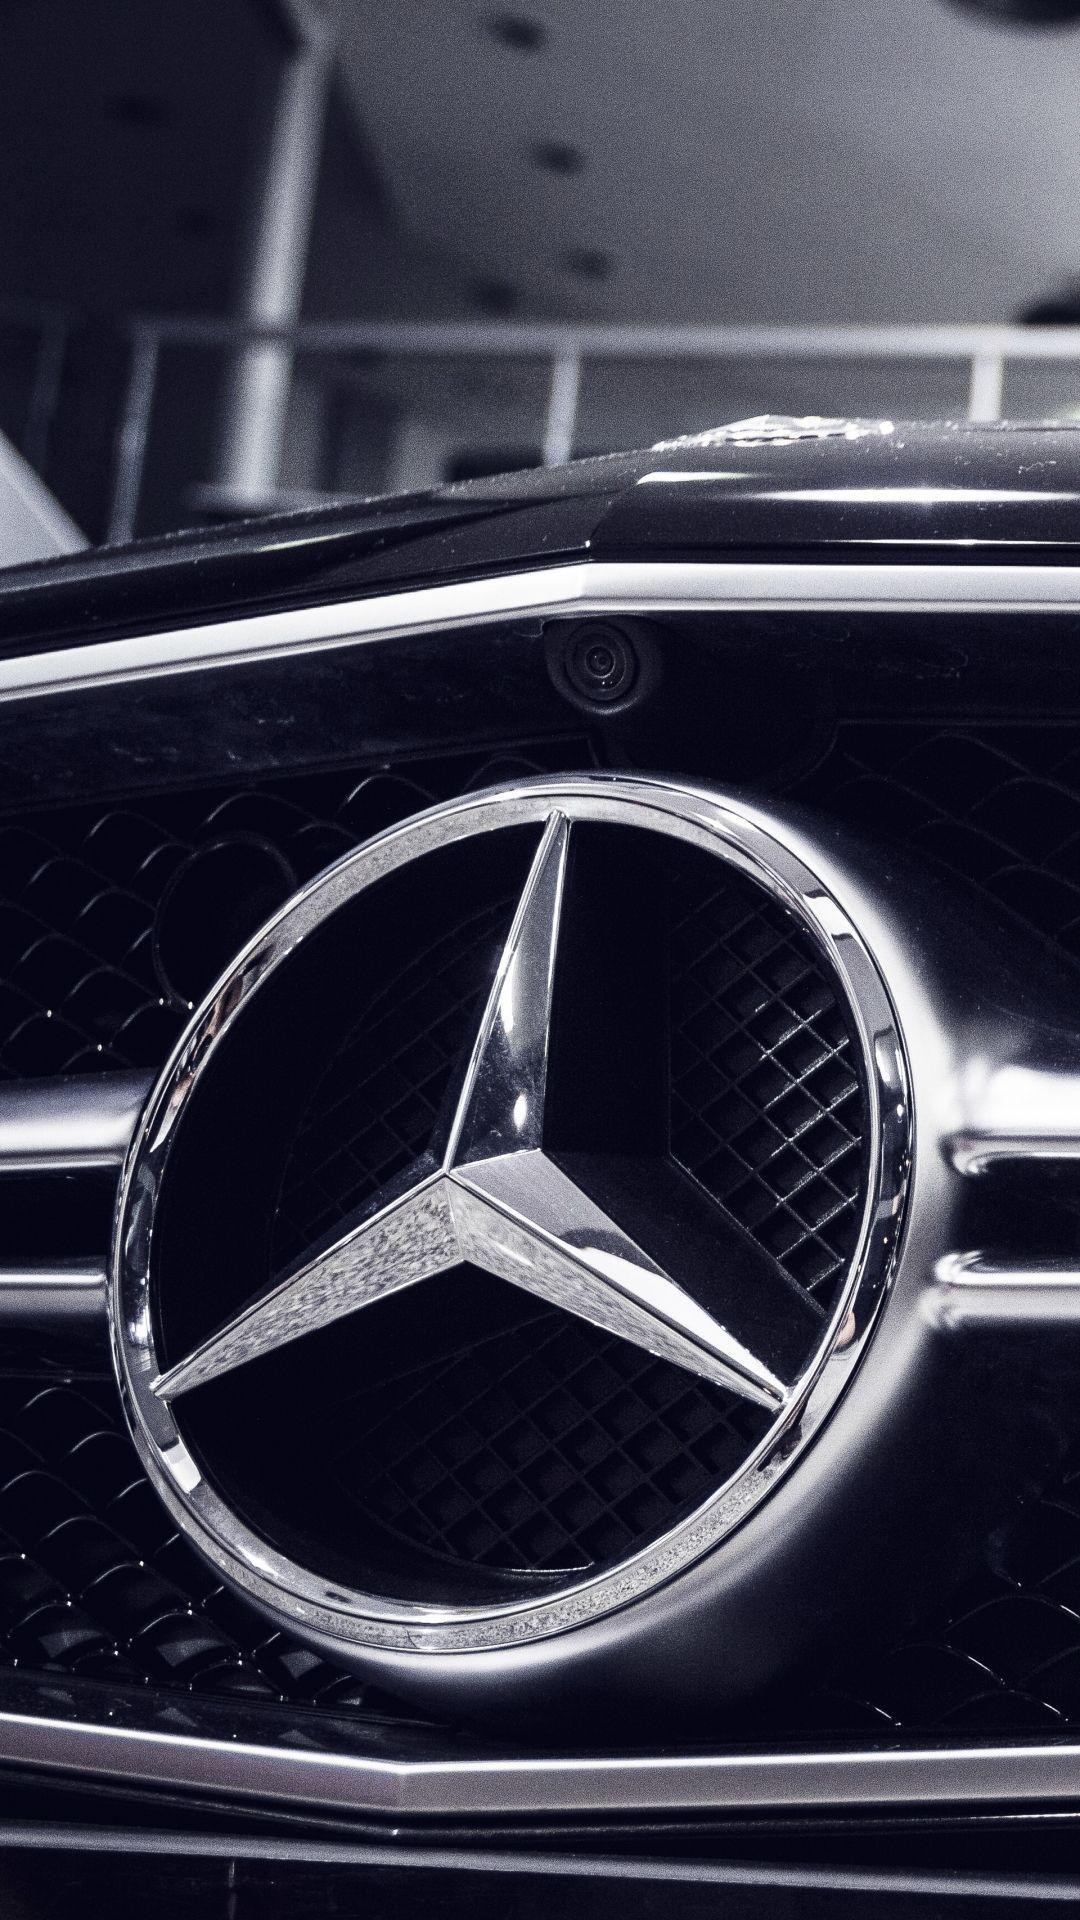 Mercedes benz wallpaper on Pinterest